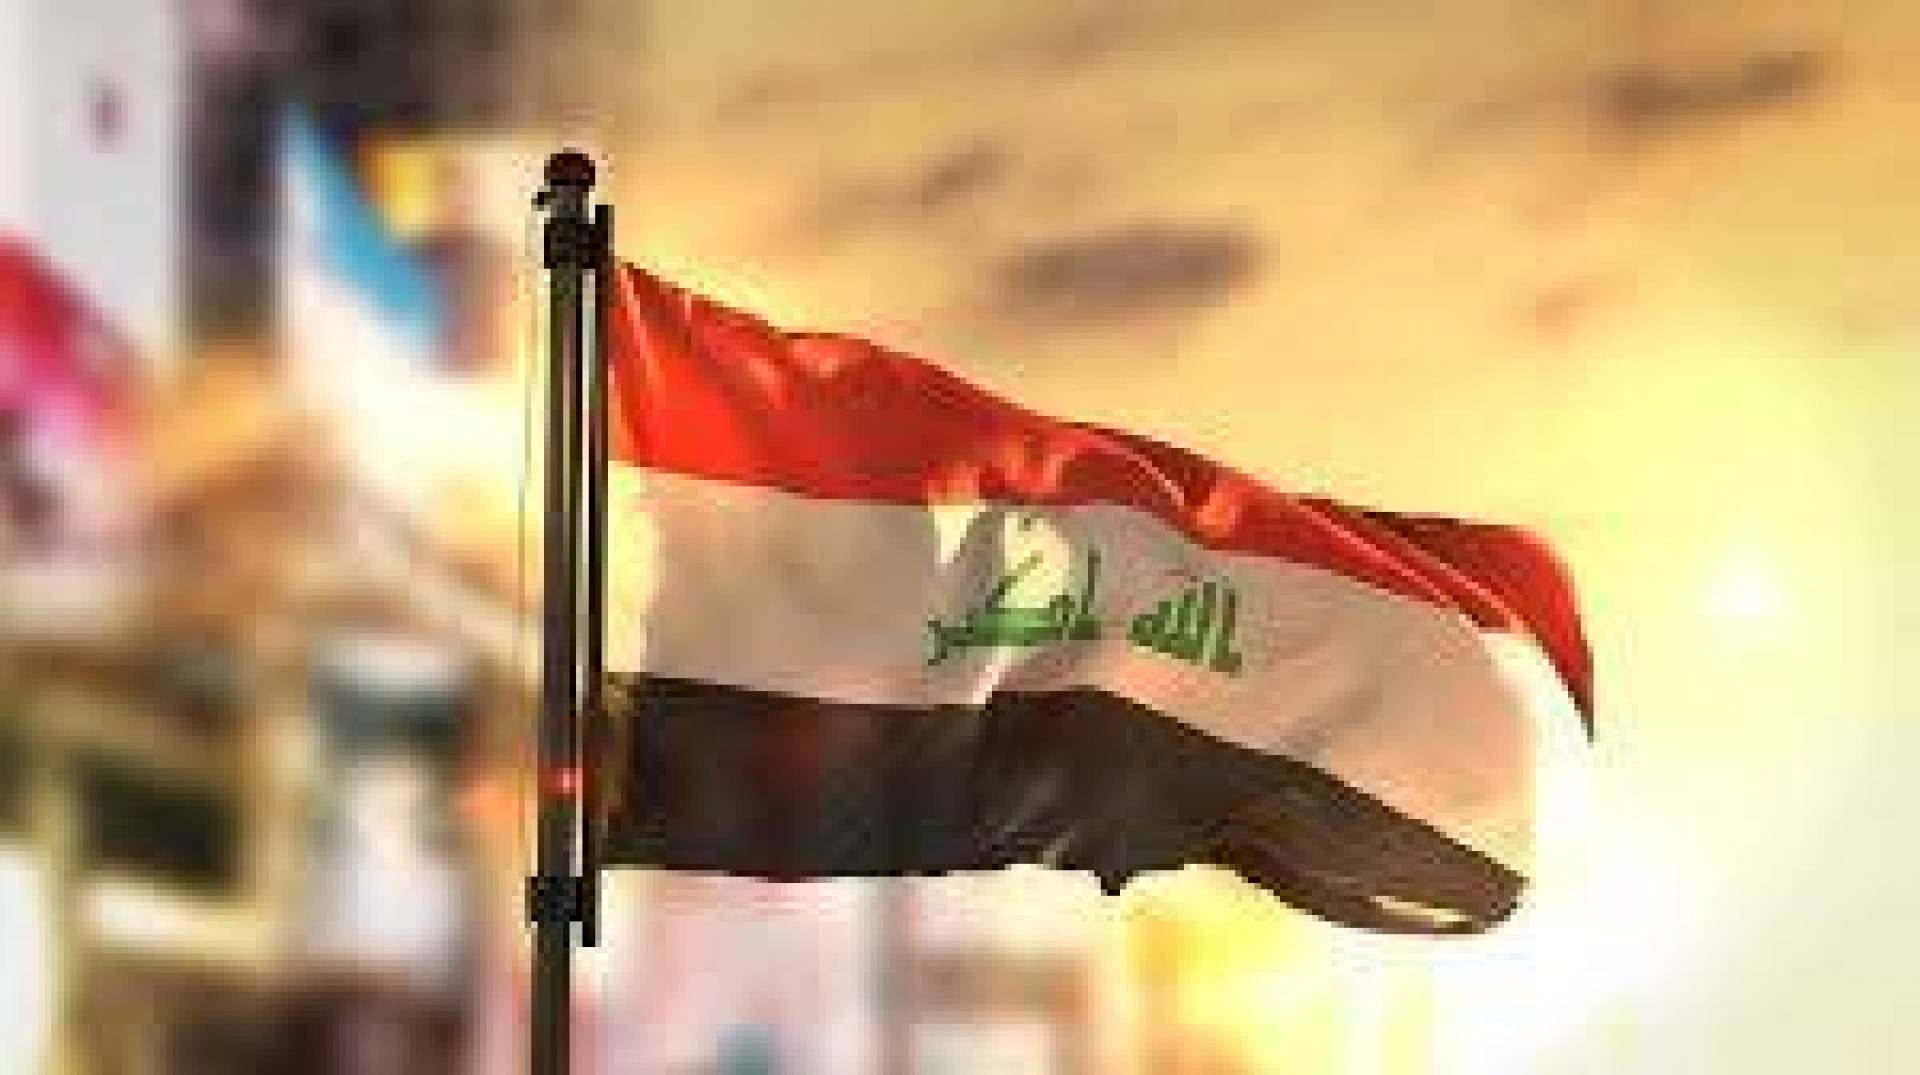 بعد 35 يوم من تشكيلها..وزيران جديدان ينضمان ينضمان لحكومة العراق